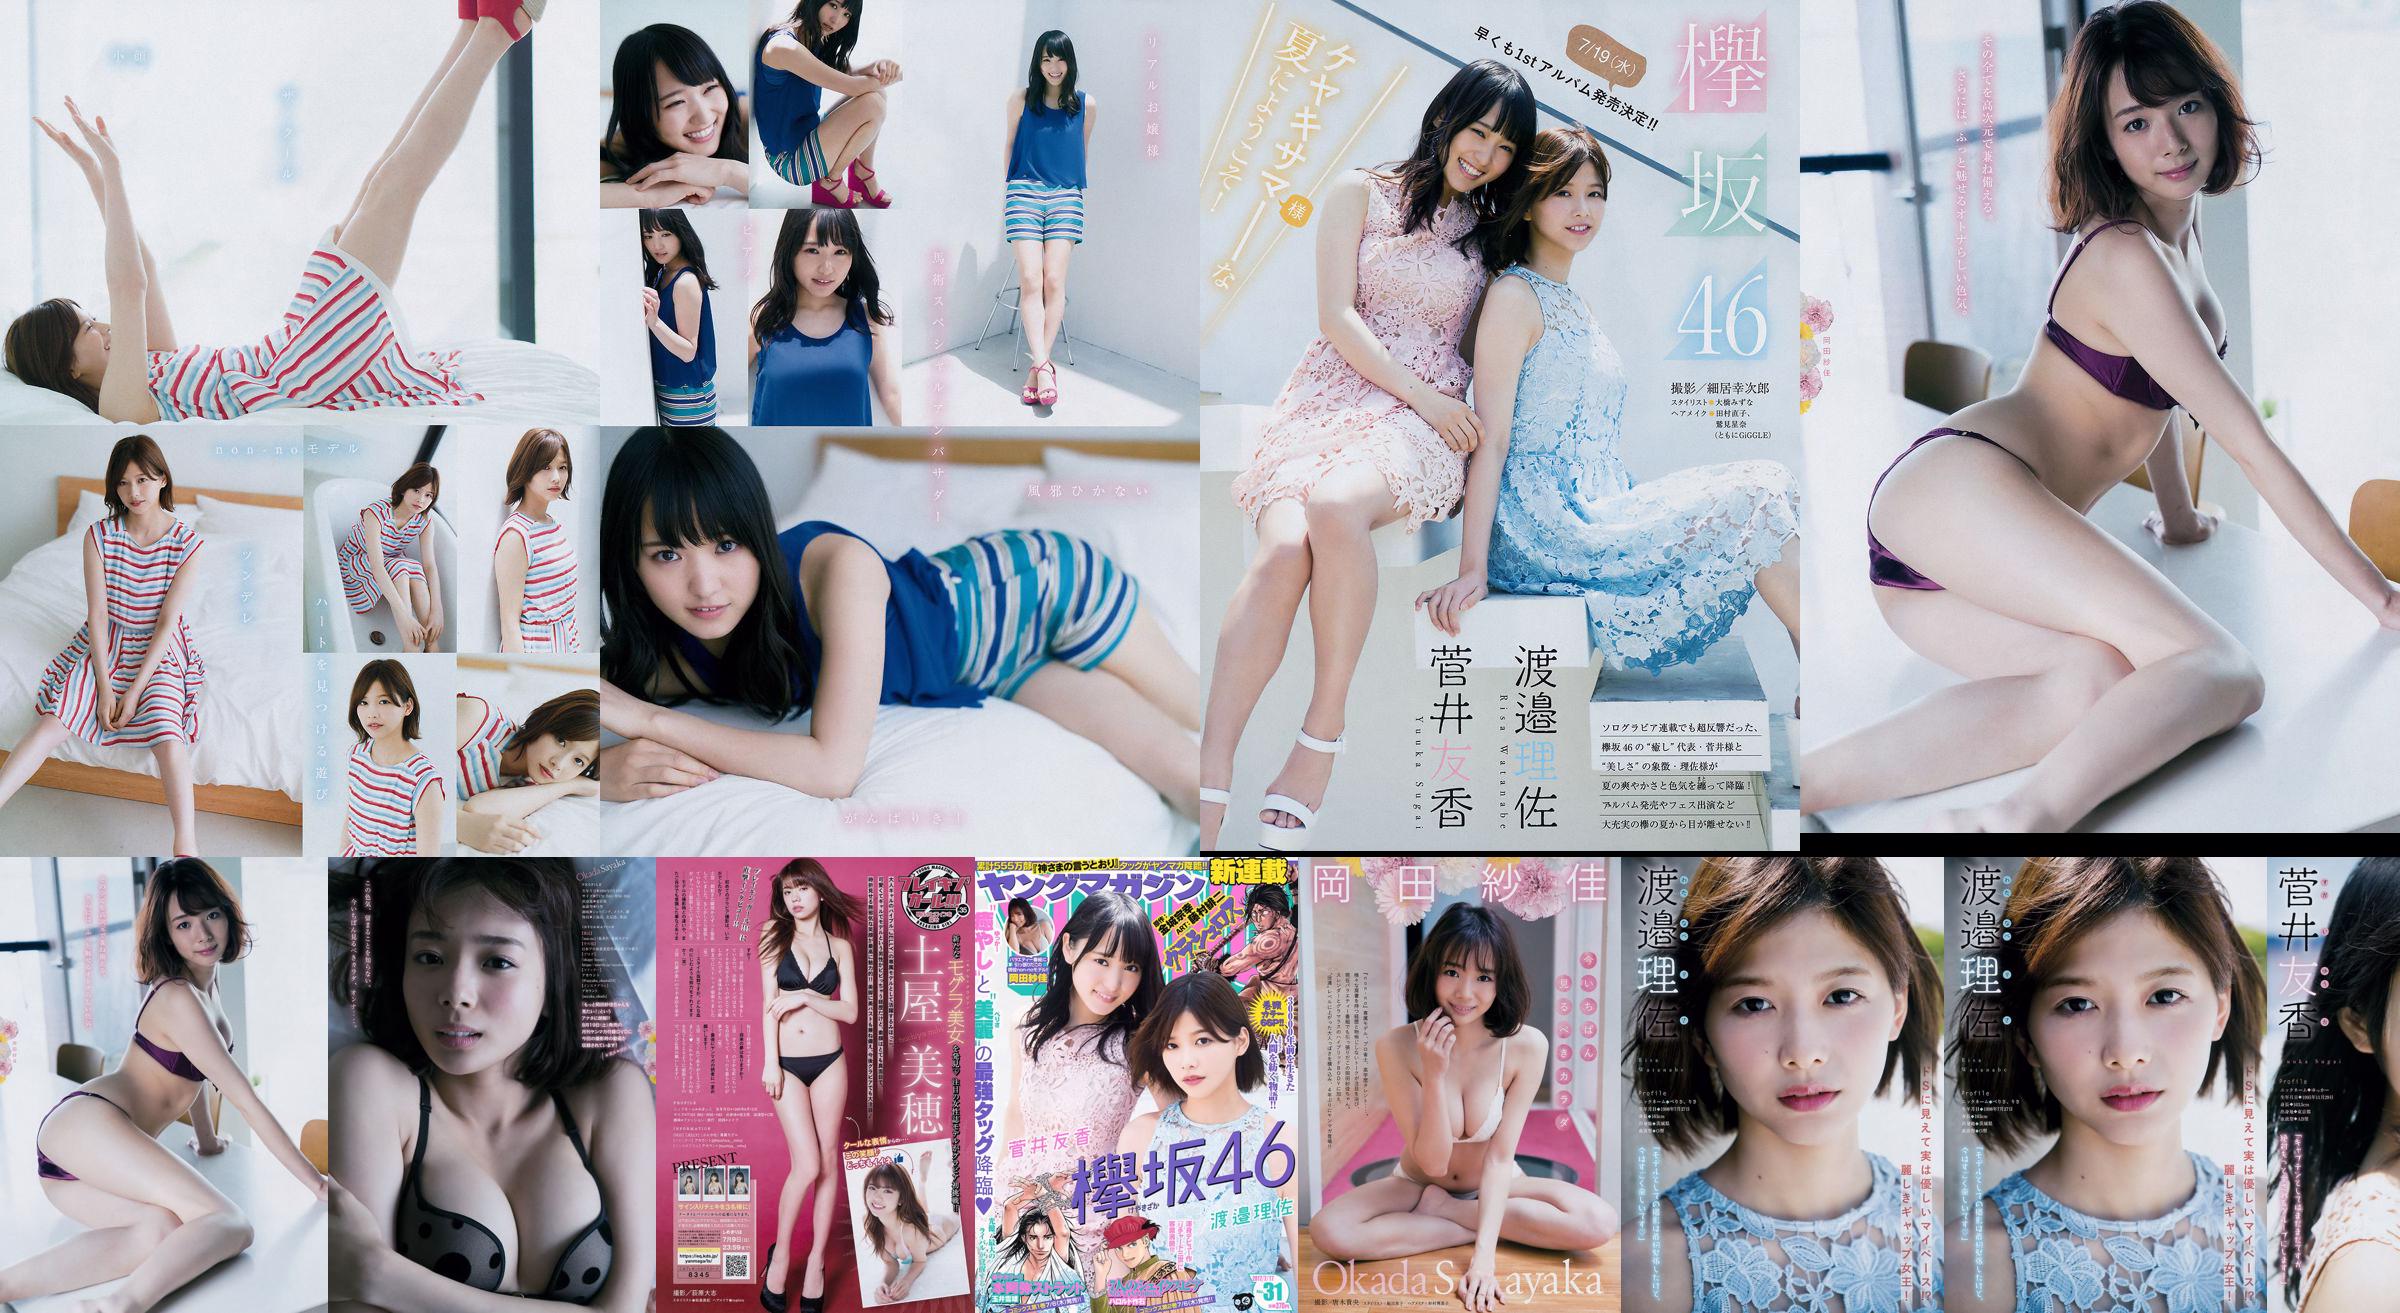 [Young Magazine] Watanabe Risa, Sugai Yuka, Okada Saika 2017 Magazine photo n ° 31 No.fde3ca Page 3